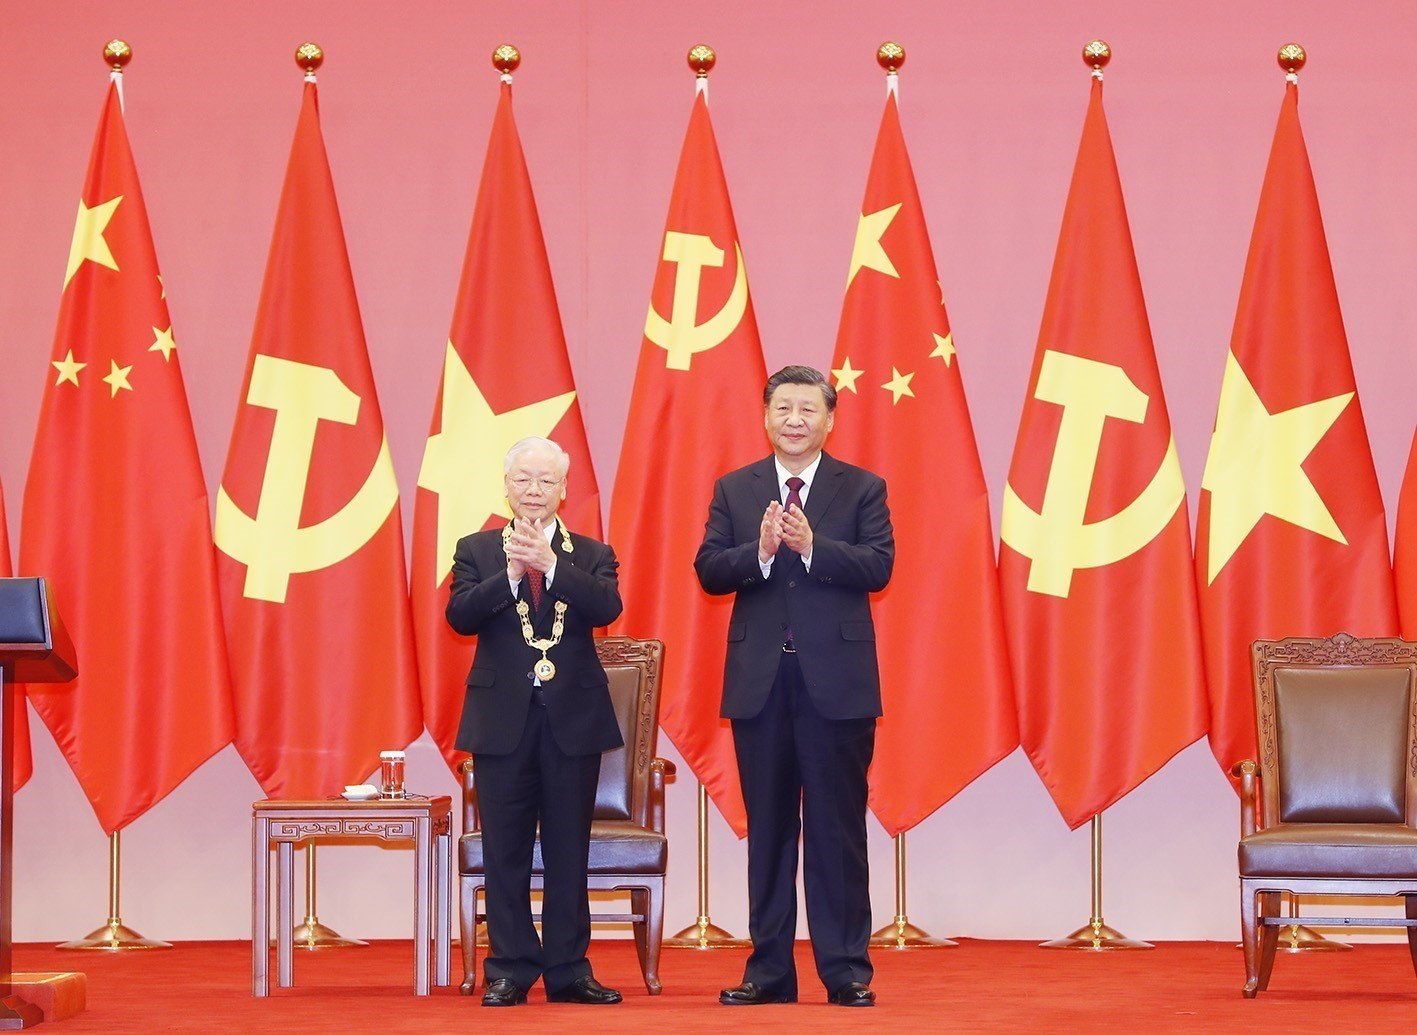 俄罗斯驻华大使为中国前财长楼继伟授予友谊勋章 - 2018年12月11日, 俄罗斯卫星通讯社